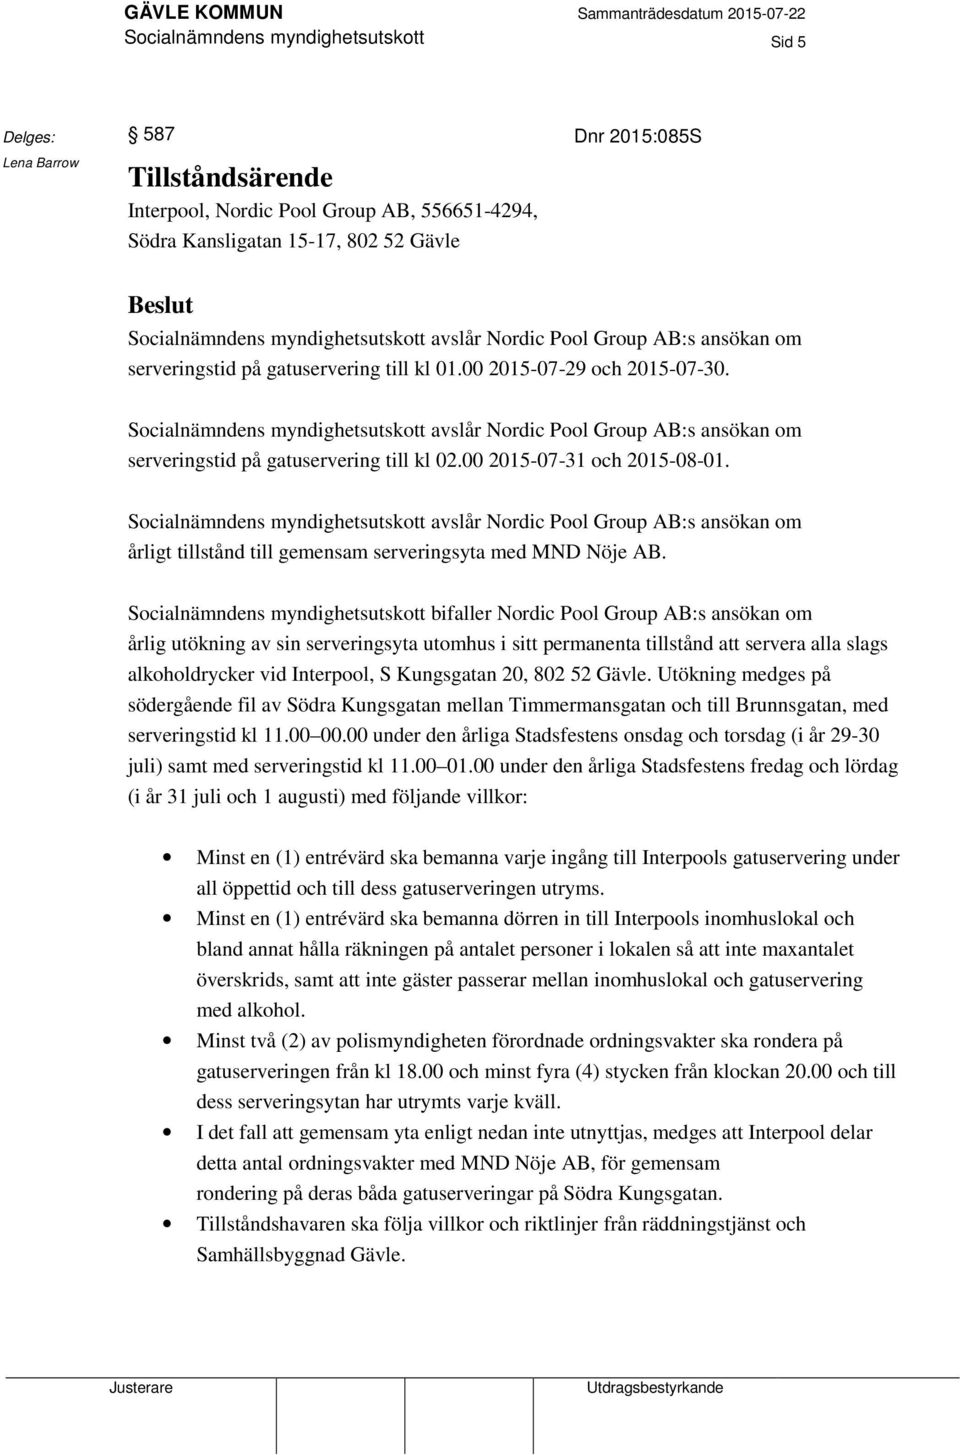 Socialnämndens myndighetsutskott avslår Nordic Pool Group AB:s ansökan om serveringstid på gatuservering till kl 02.00 2015-07-31 och 2015-08-01.